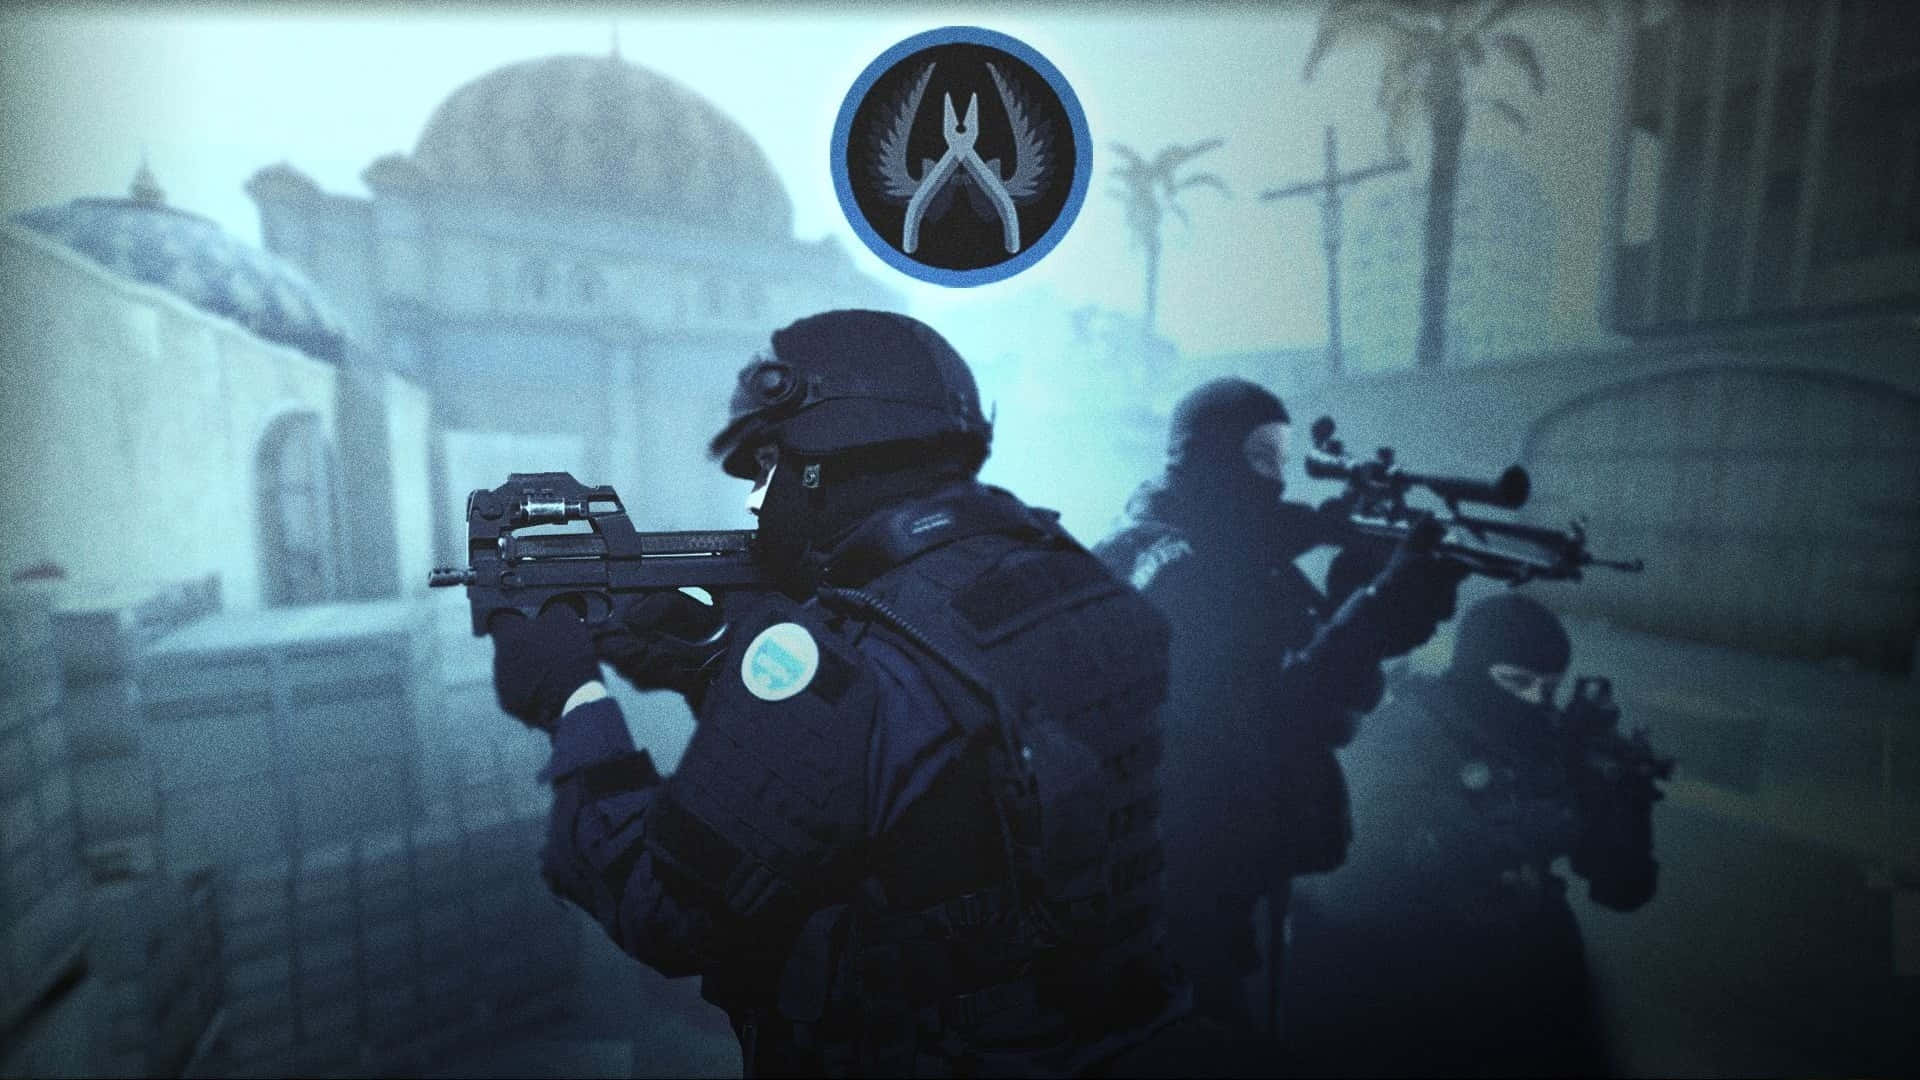 Equipeterrorista Azul 1080p Plano De Fundo De Counter Strike Global Offensive.